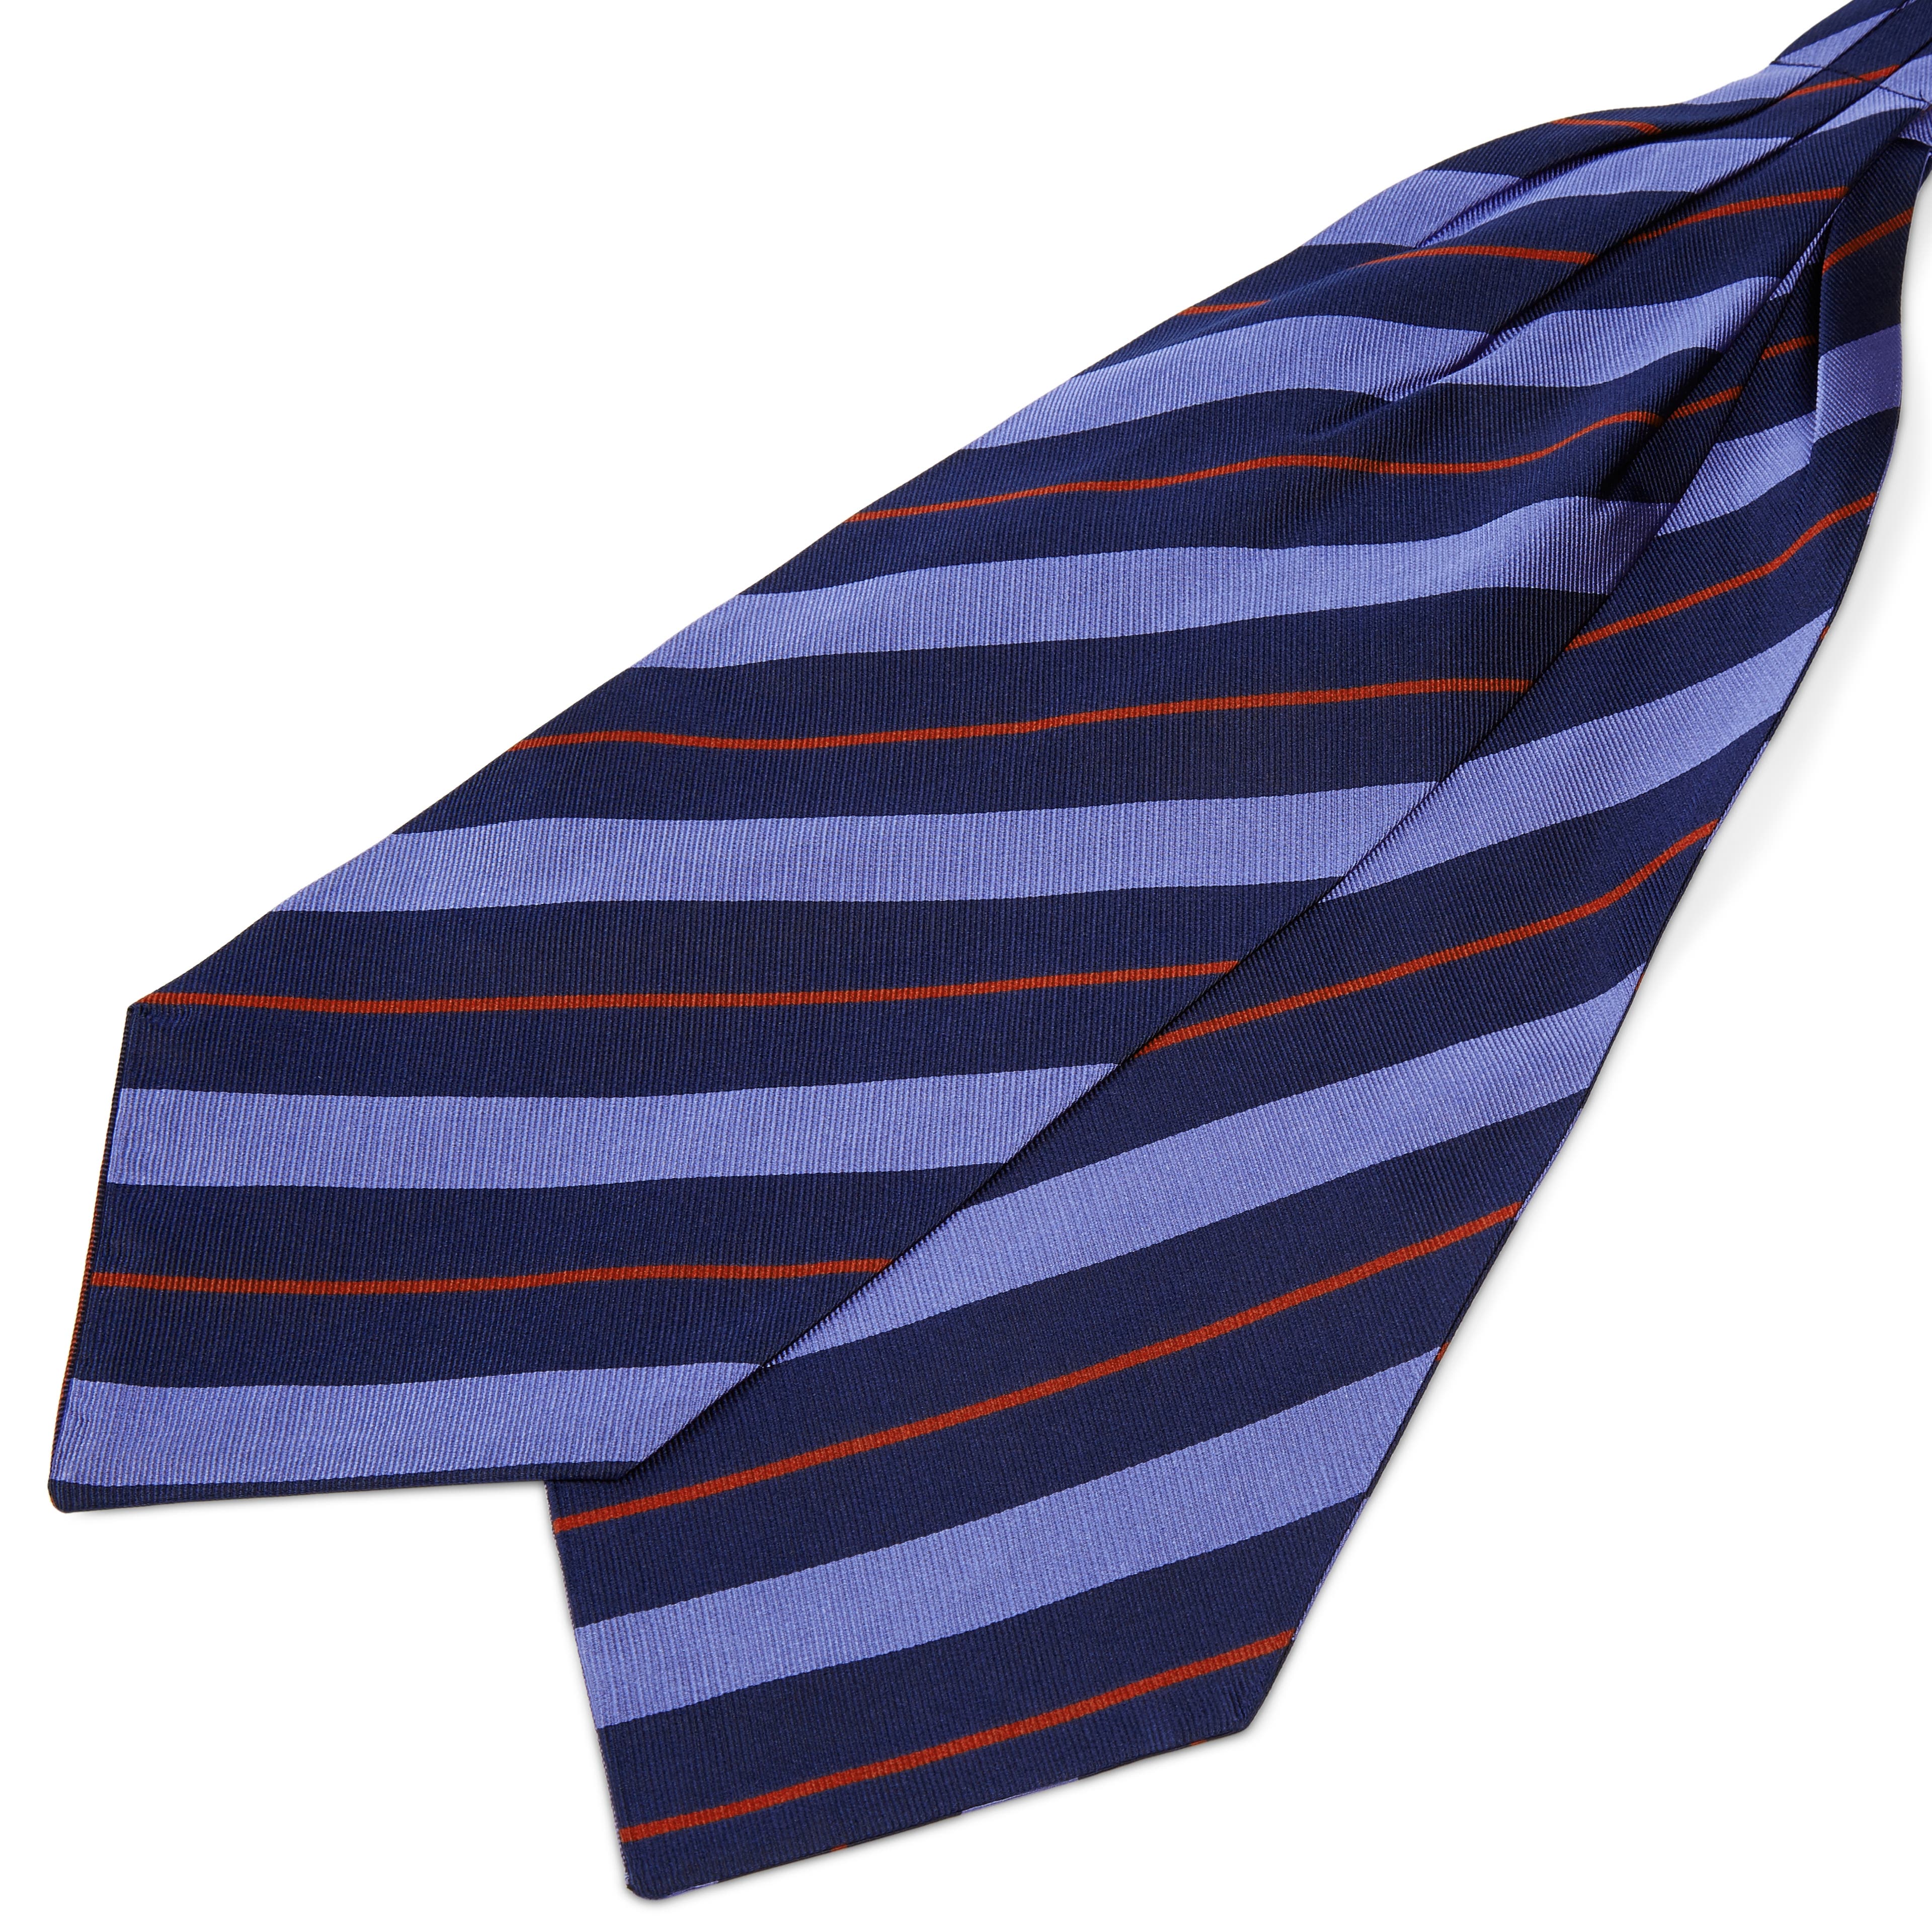 Cravată din mătase bleumarin cu dungi albastru pastel și roșii